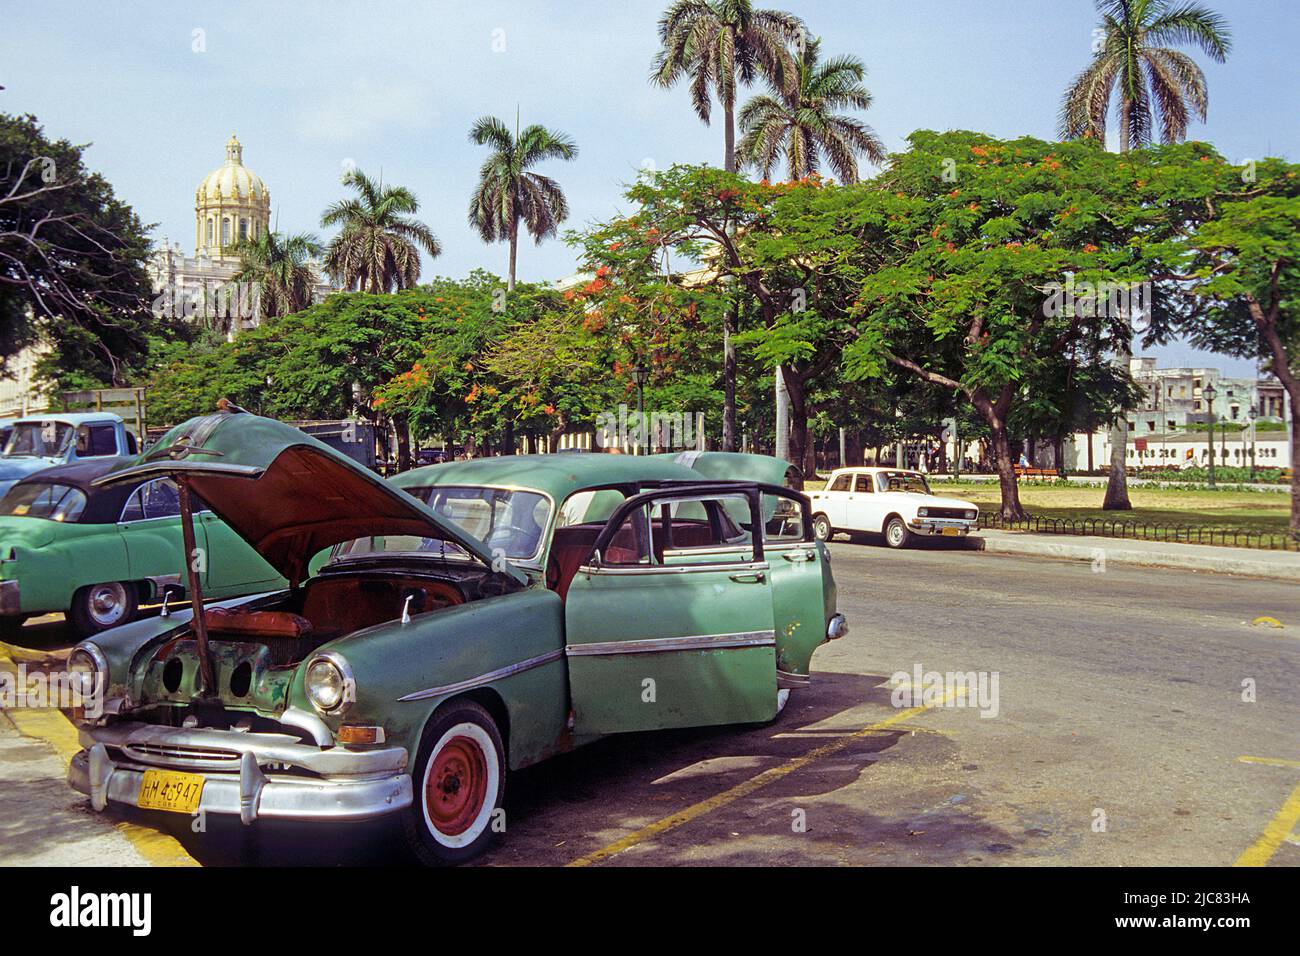 American classic car at Havana, Cuba, Caribbean Stock Photo